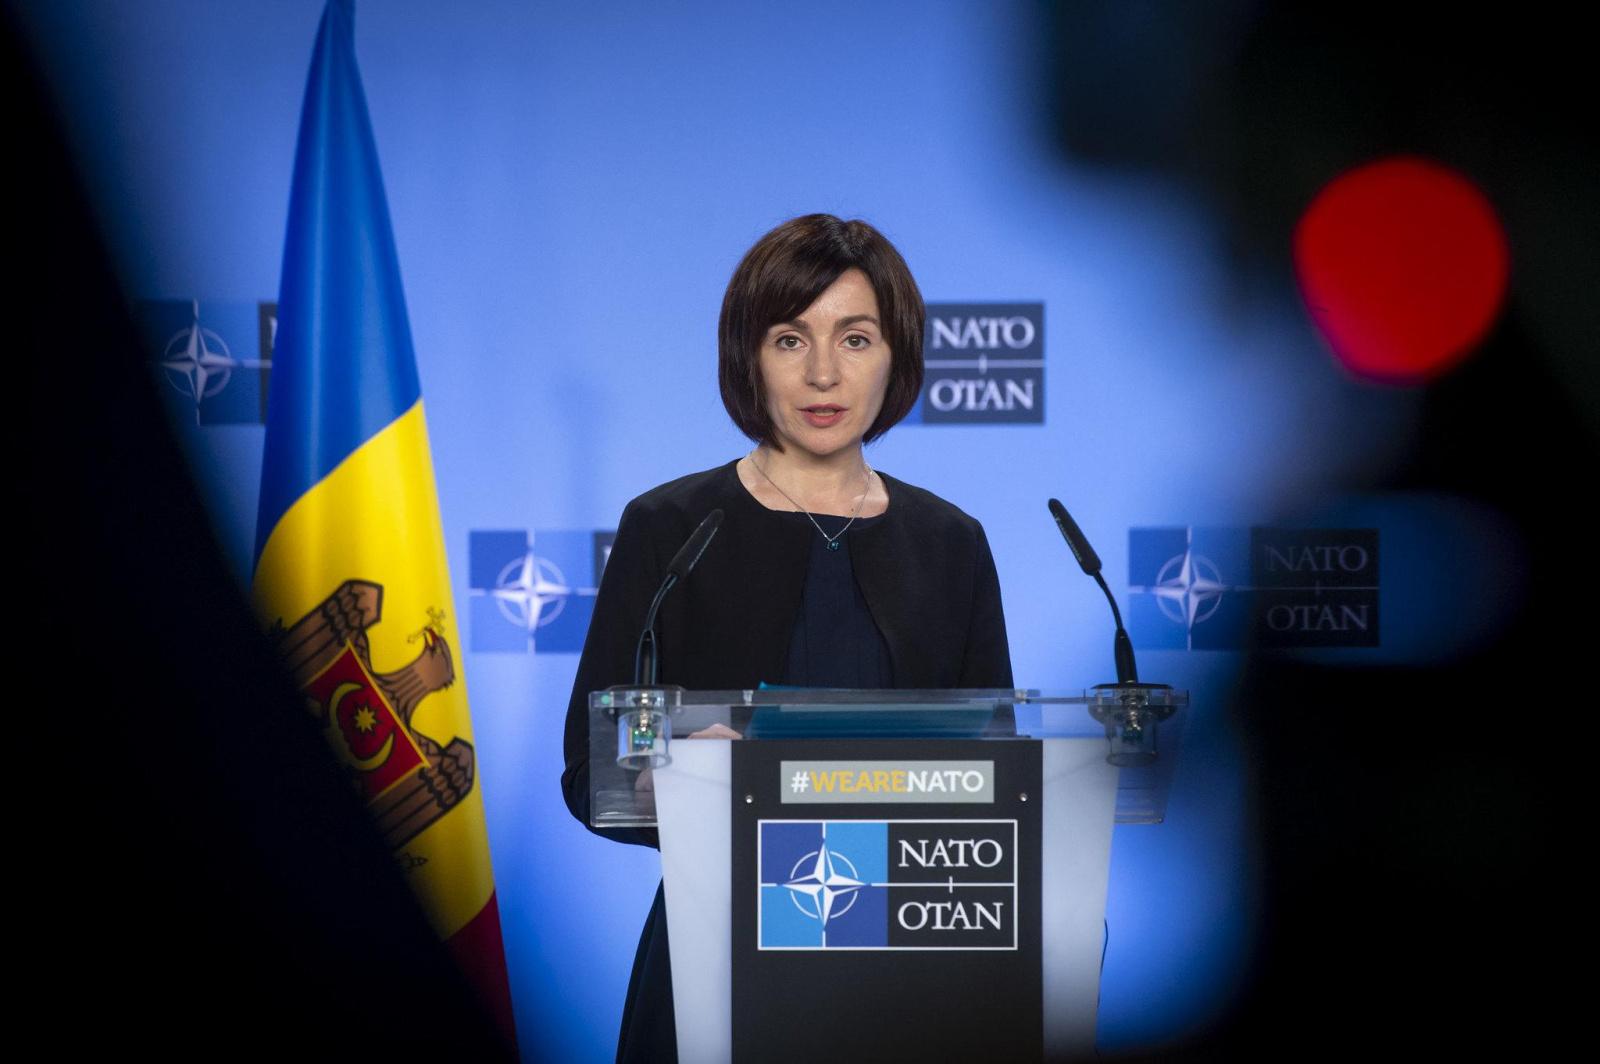 ЕС и НАТО пытаются втянуть Молдову в конфликт с Россией – молдавский эксперт